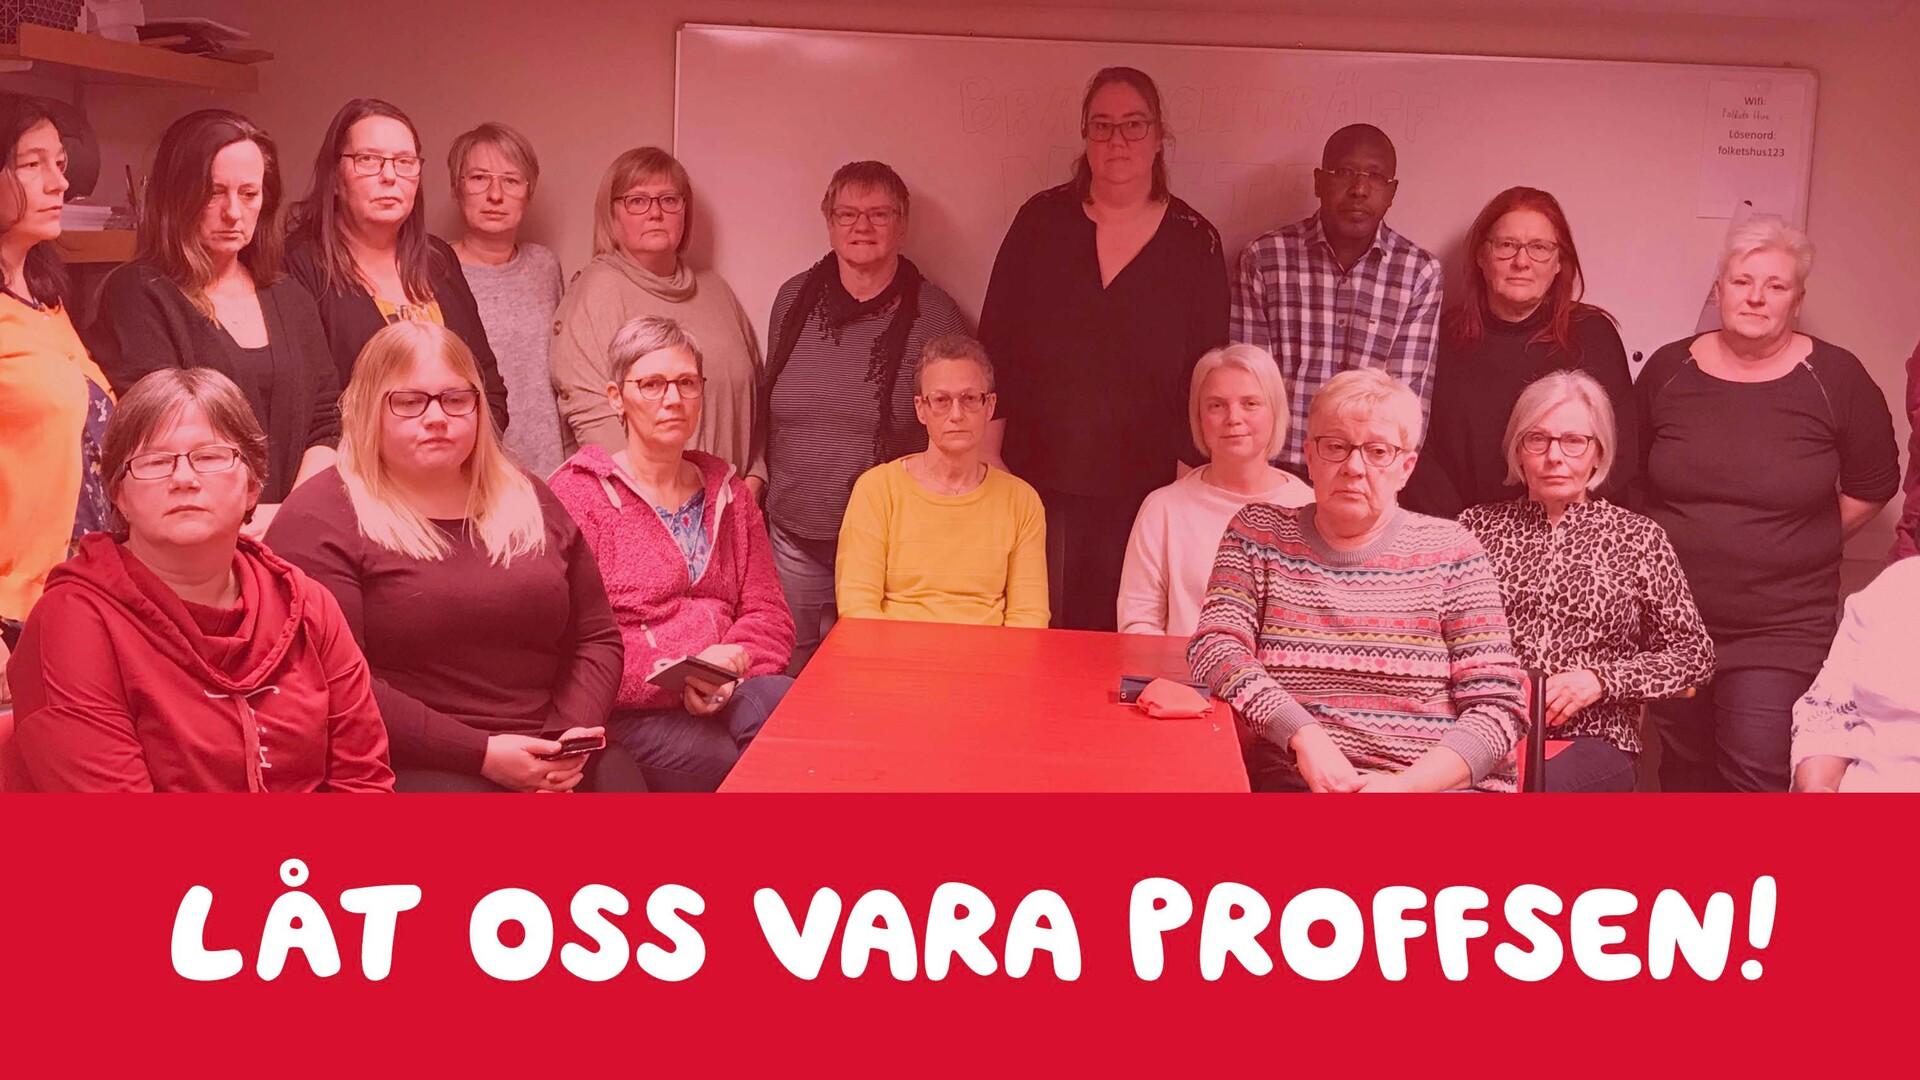 Majoriteten av personalen som jobbar natt i Vaggeryds kommun samlades för att diskutera neddragningarna.